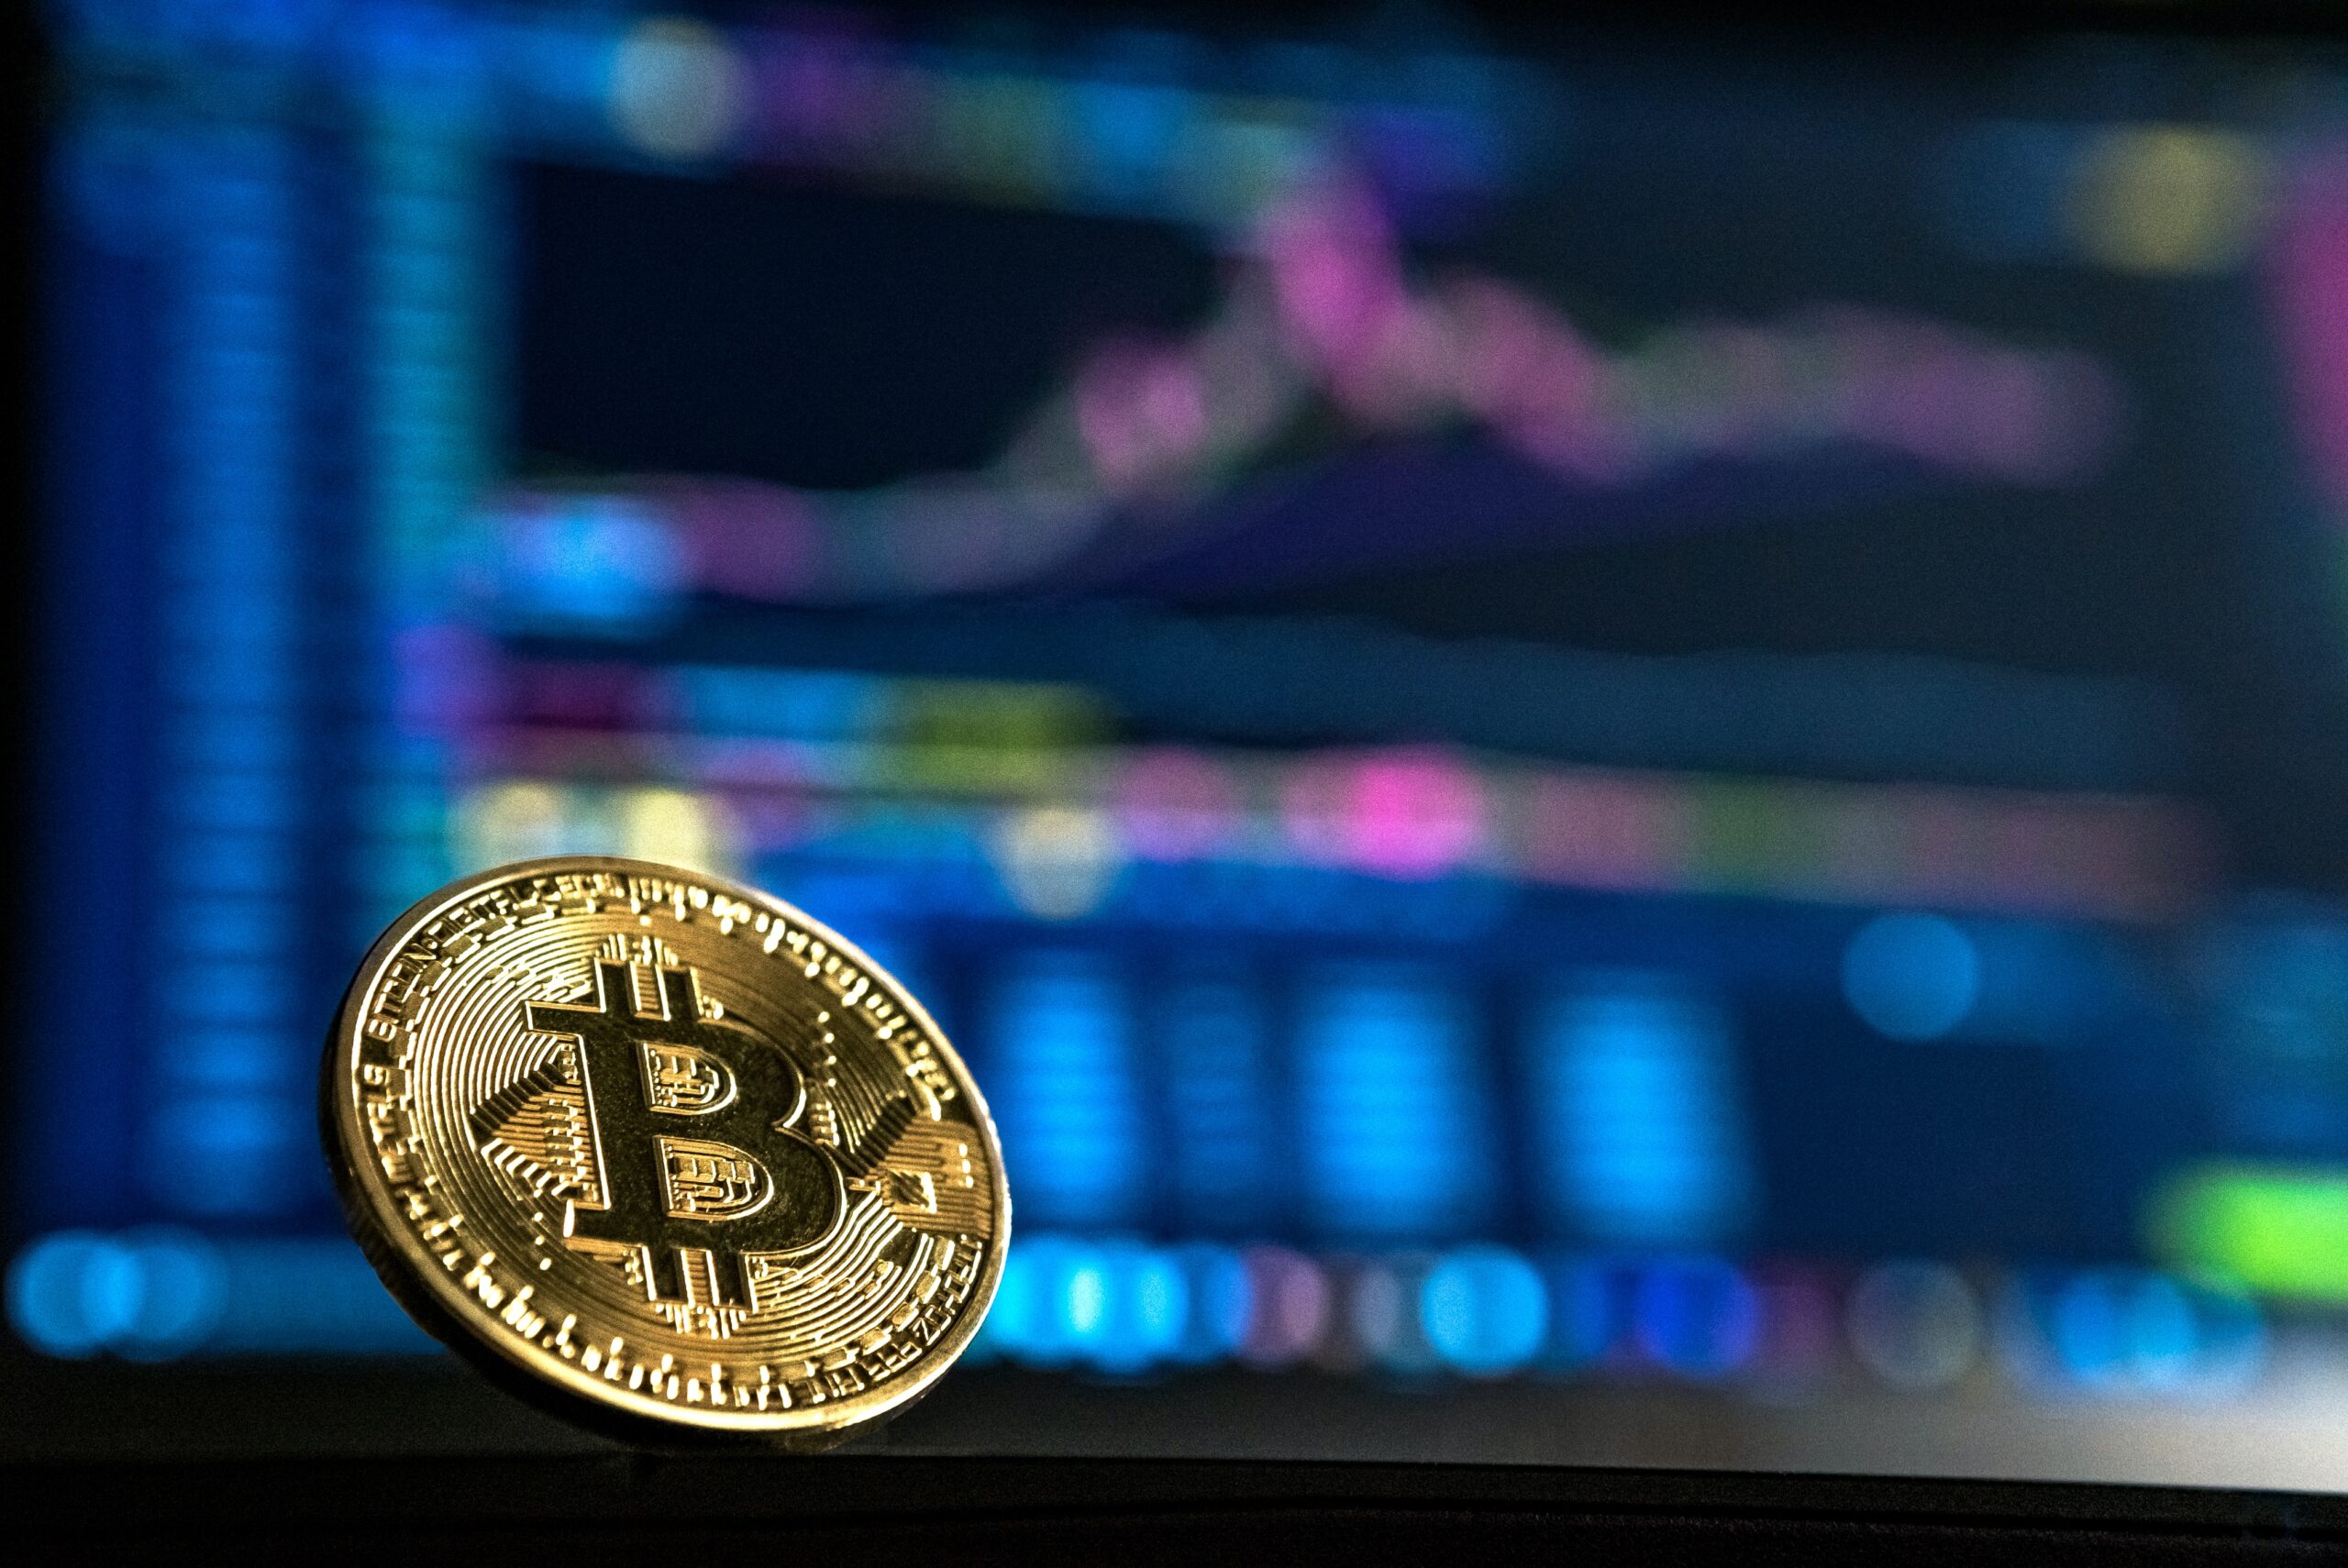 Cena Bitcoina może osiągnąć 2.3 miliona dolarów, jeśli zostanie na niego alokowane 19.4% światowych aktywów: Ark Invest – Unchained